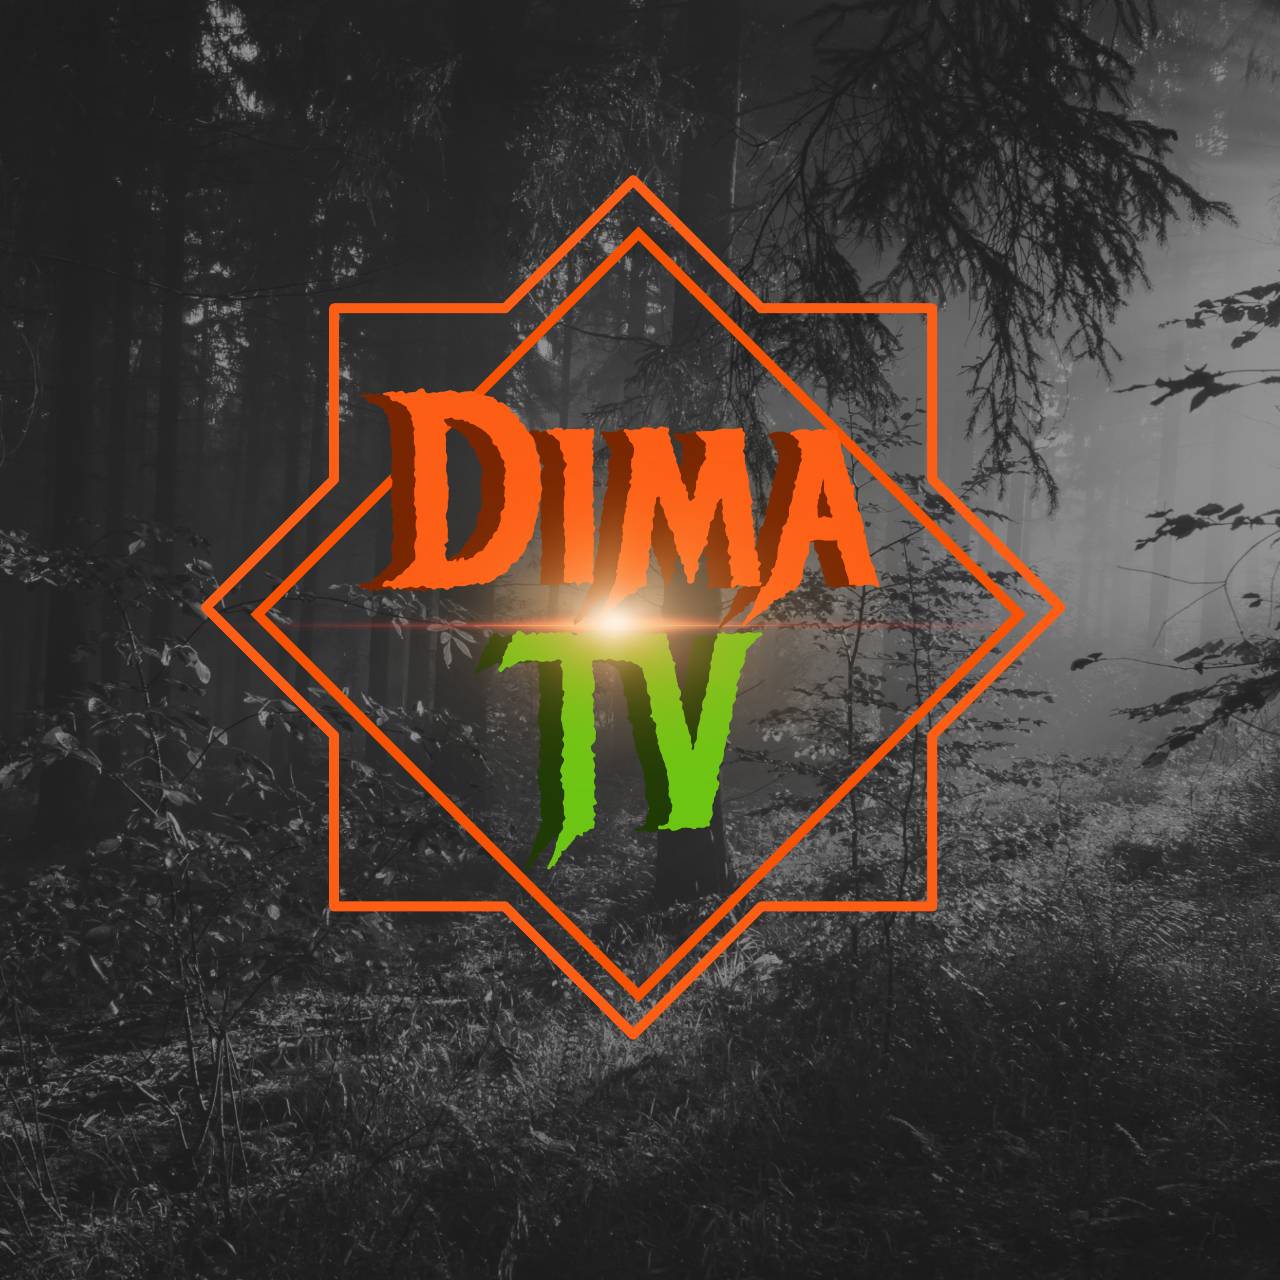 Dimas tv steam фото 6